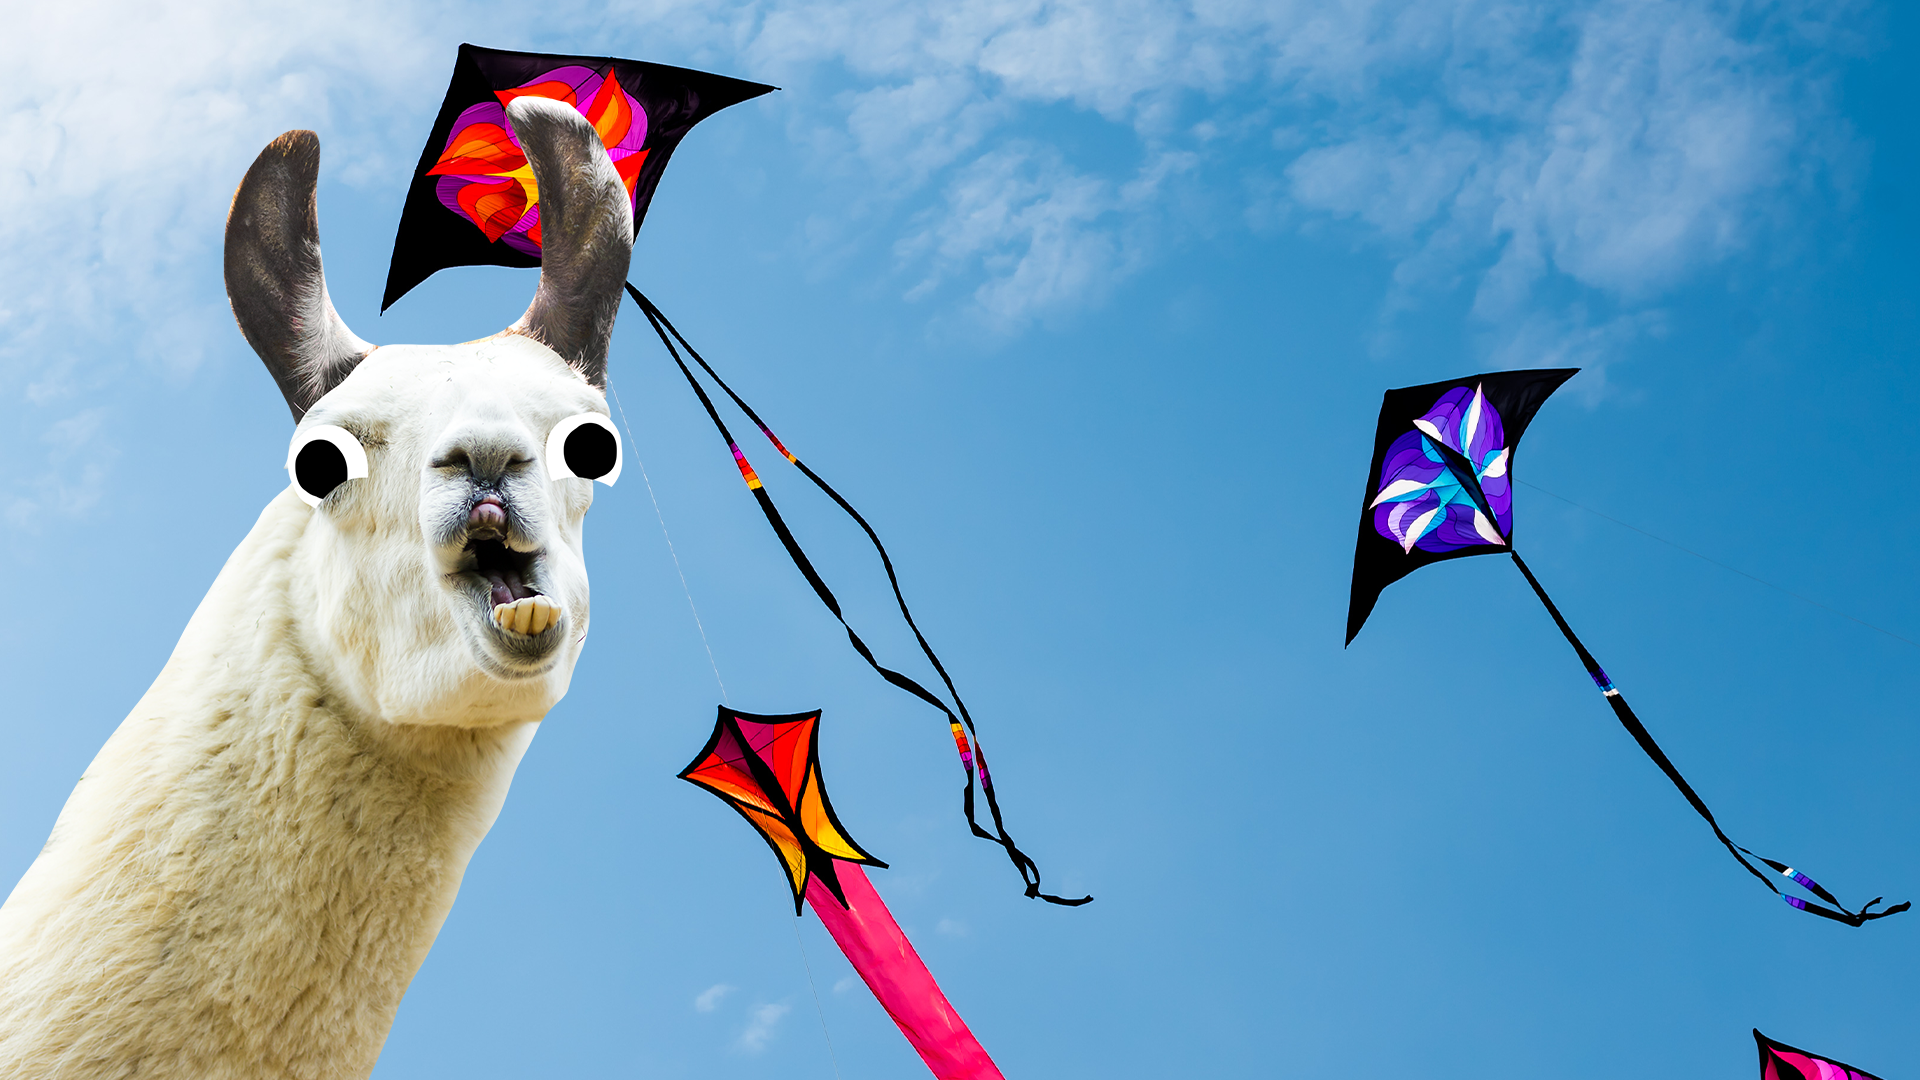 Kites and llama